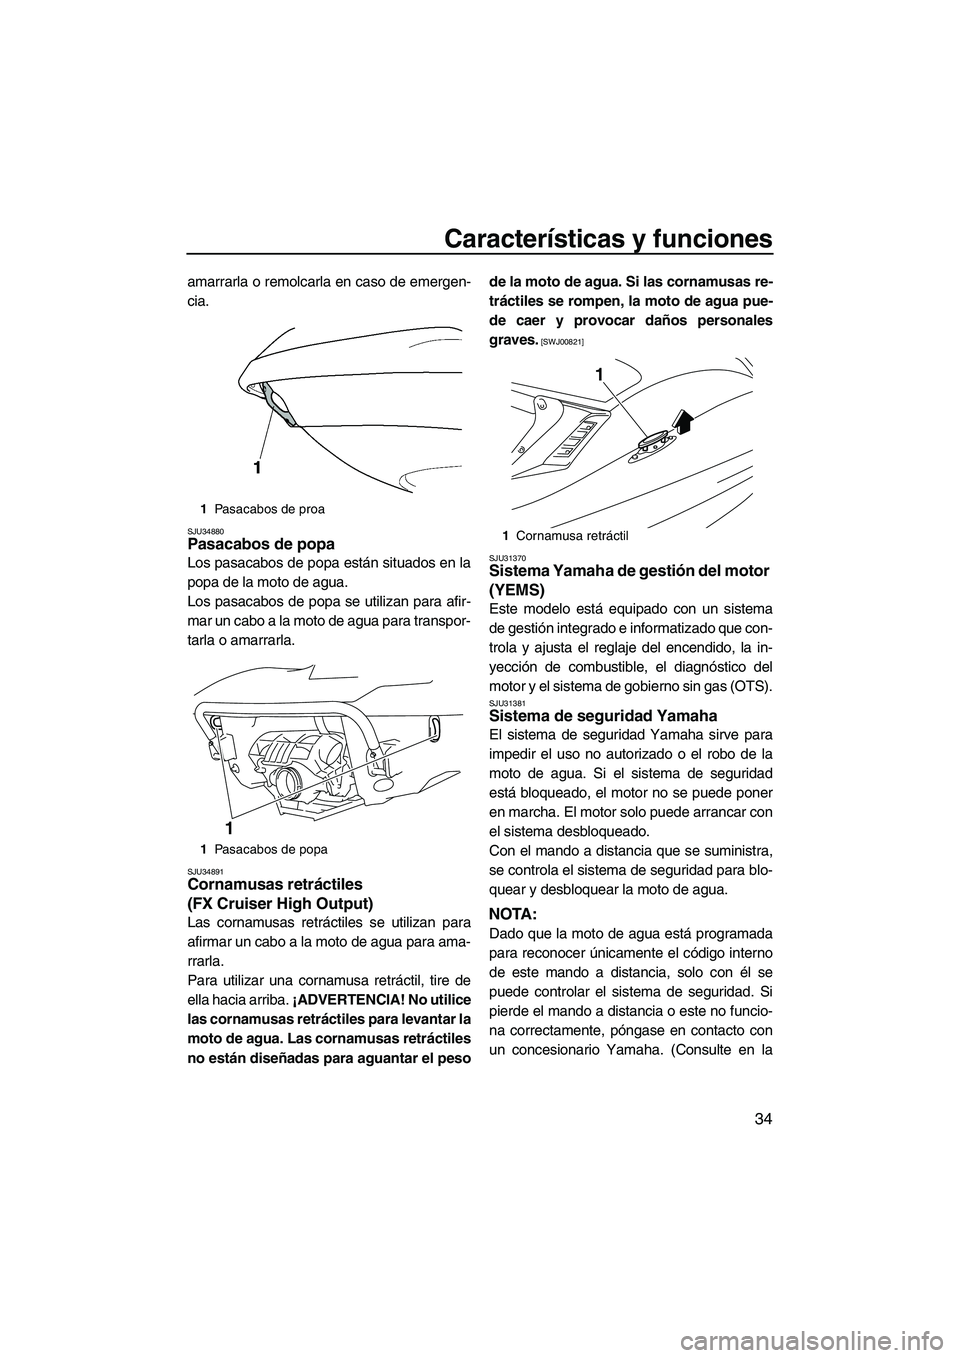 YAMAHA FX HO CRUISER 2009  Manuale de Empleo (in Spanish) Características y funciones
34
amarrarla o remolcarla en caso de emergen-
cia.
SJU34880Pasacabos de popa 
Los pasacabos de popa están situados en la
popa de la moto de agua.
Los pasacabos de popa se